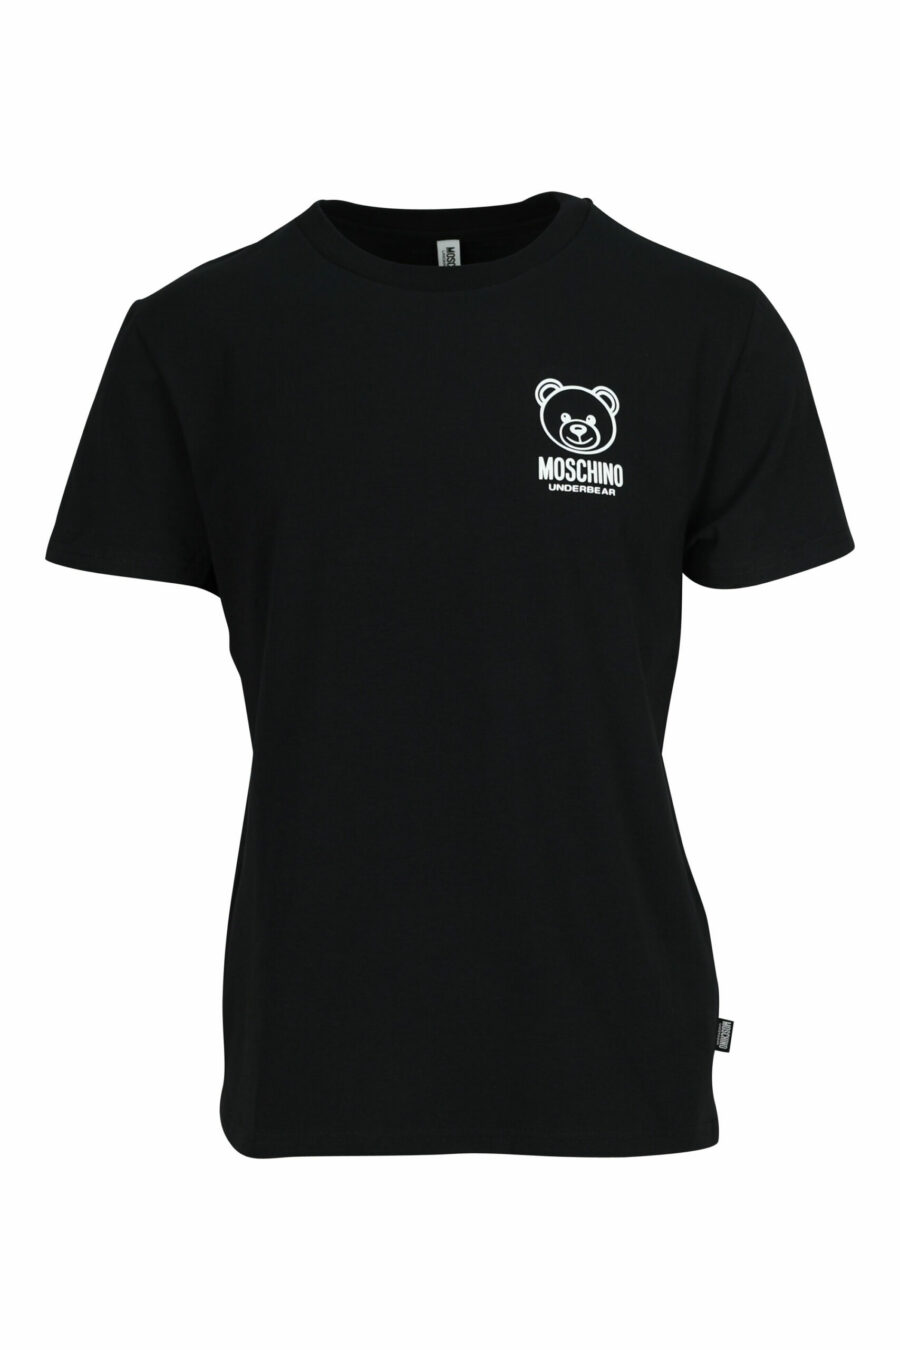 T-shirt preta com minilogo de urso branco emborrachado "underbear" - 667113602639 scaled